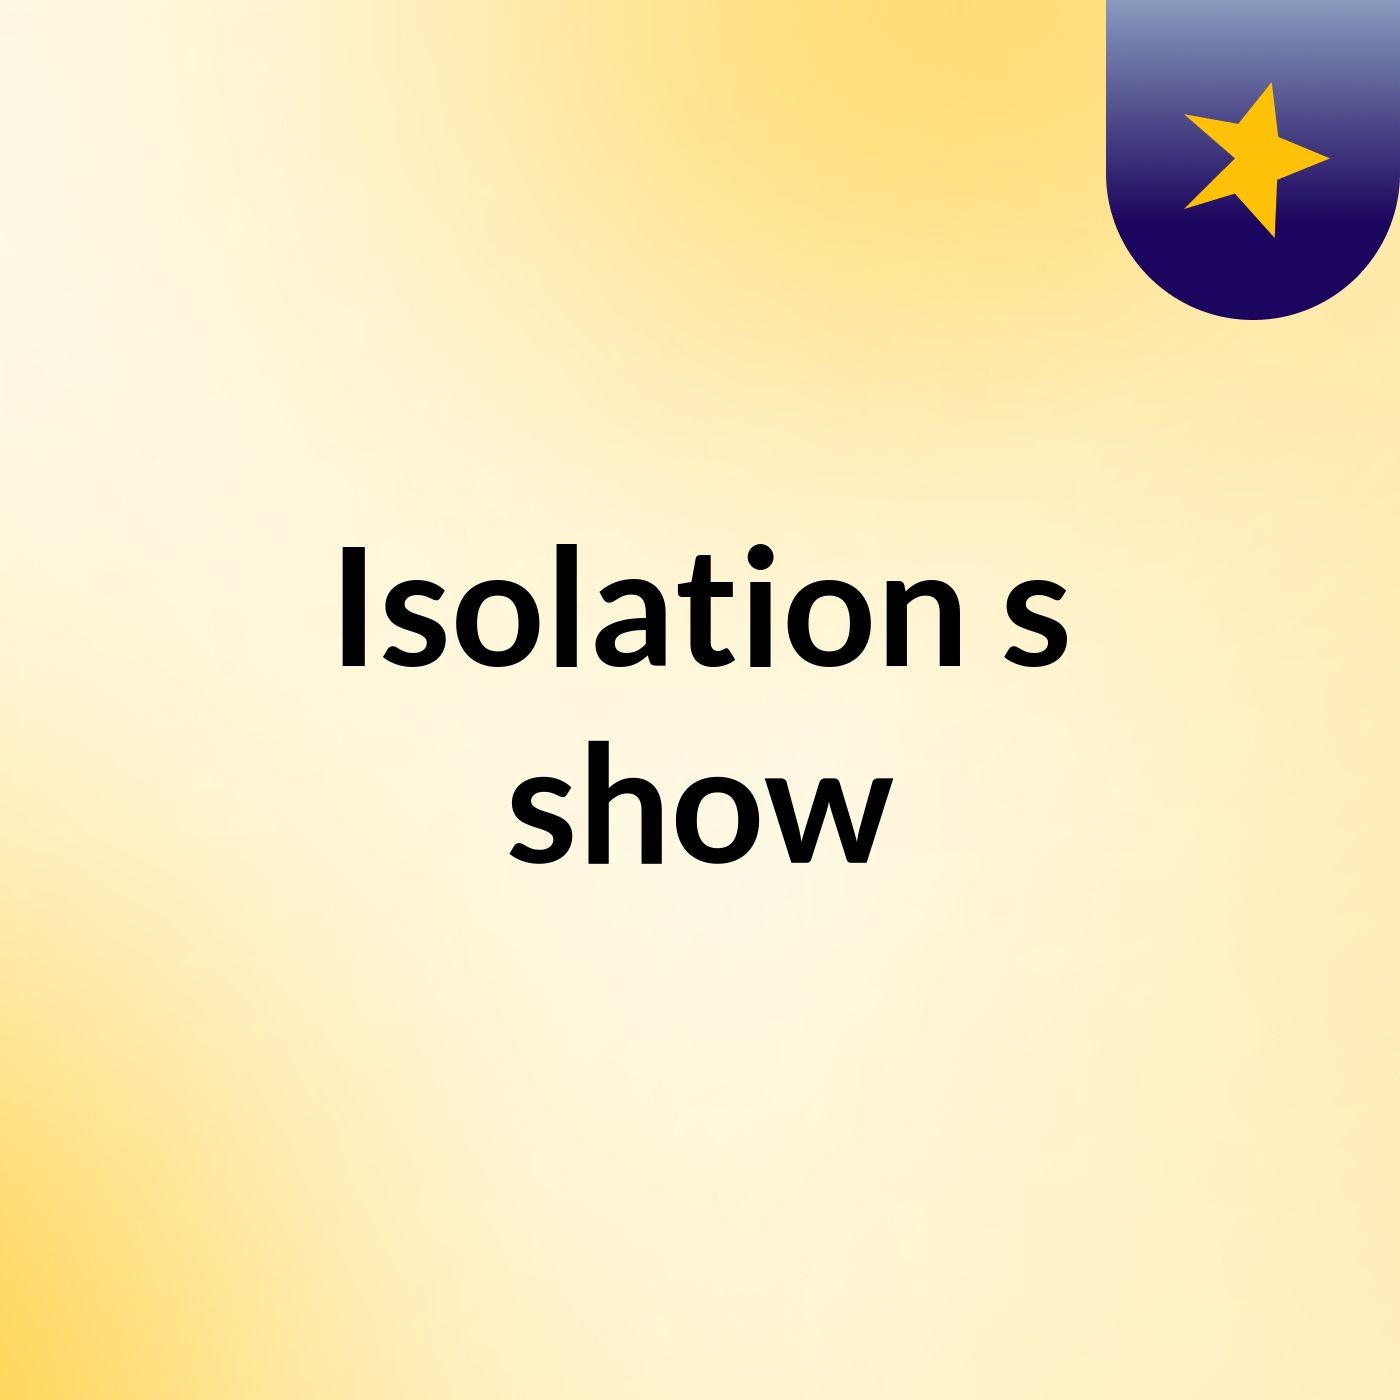 Isolation's show